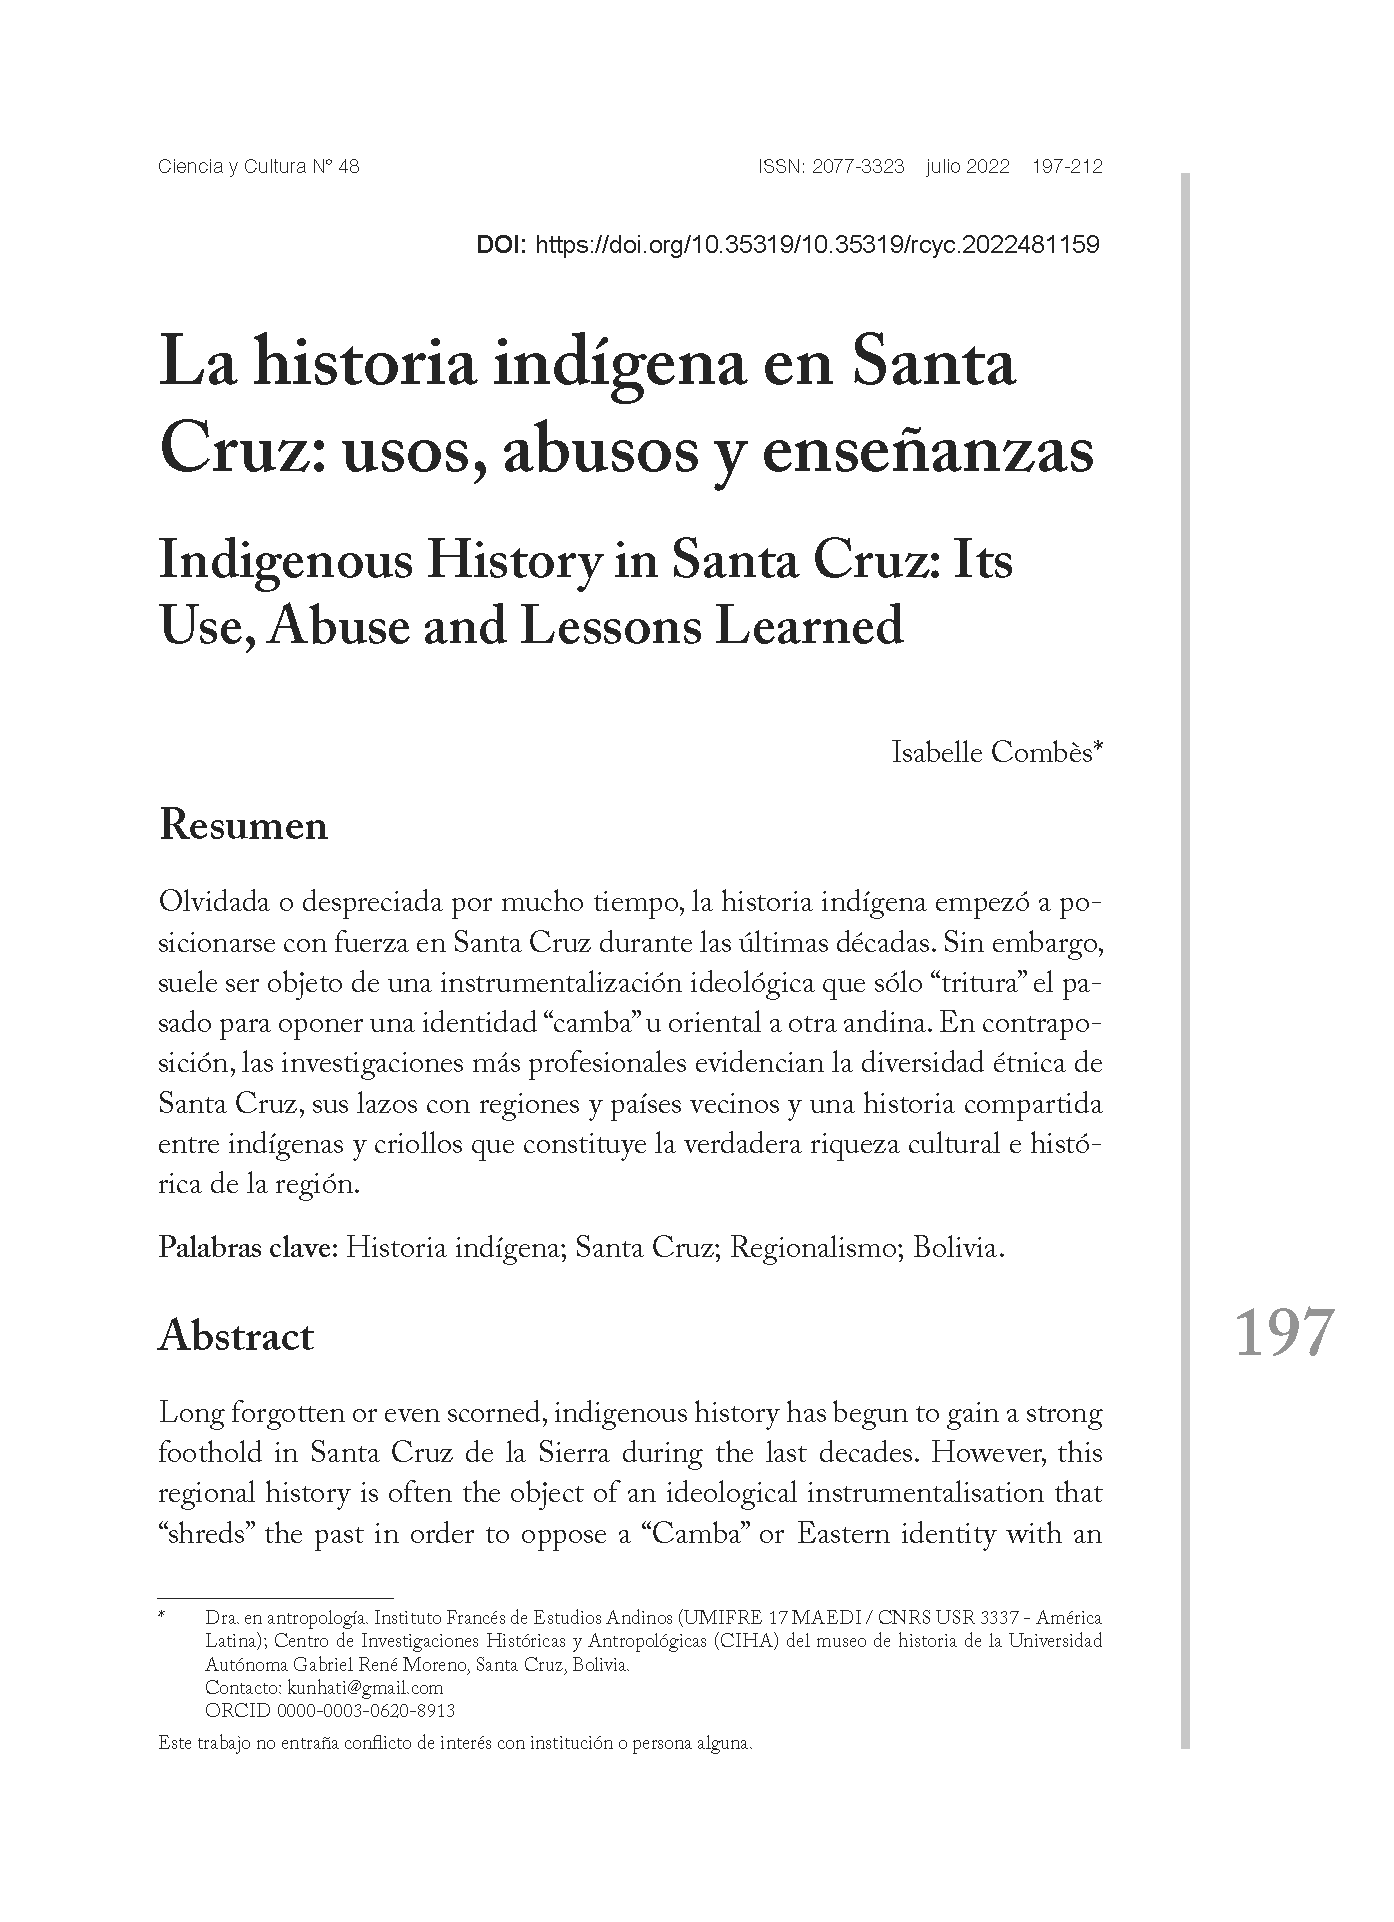 La historia indígena en Santa Cruz: usos, abusos y enseñanzas